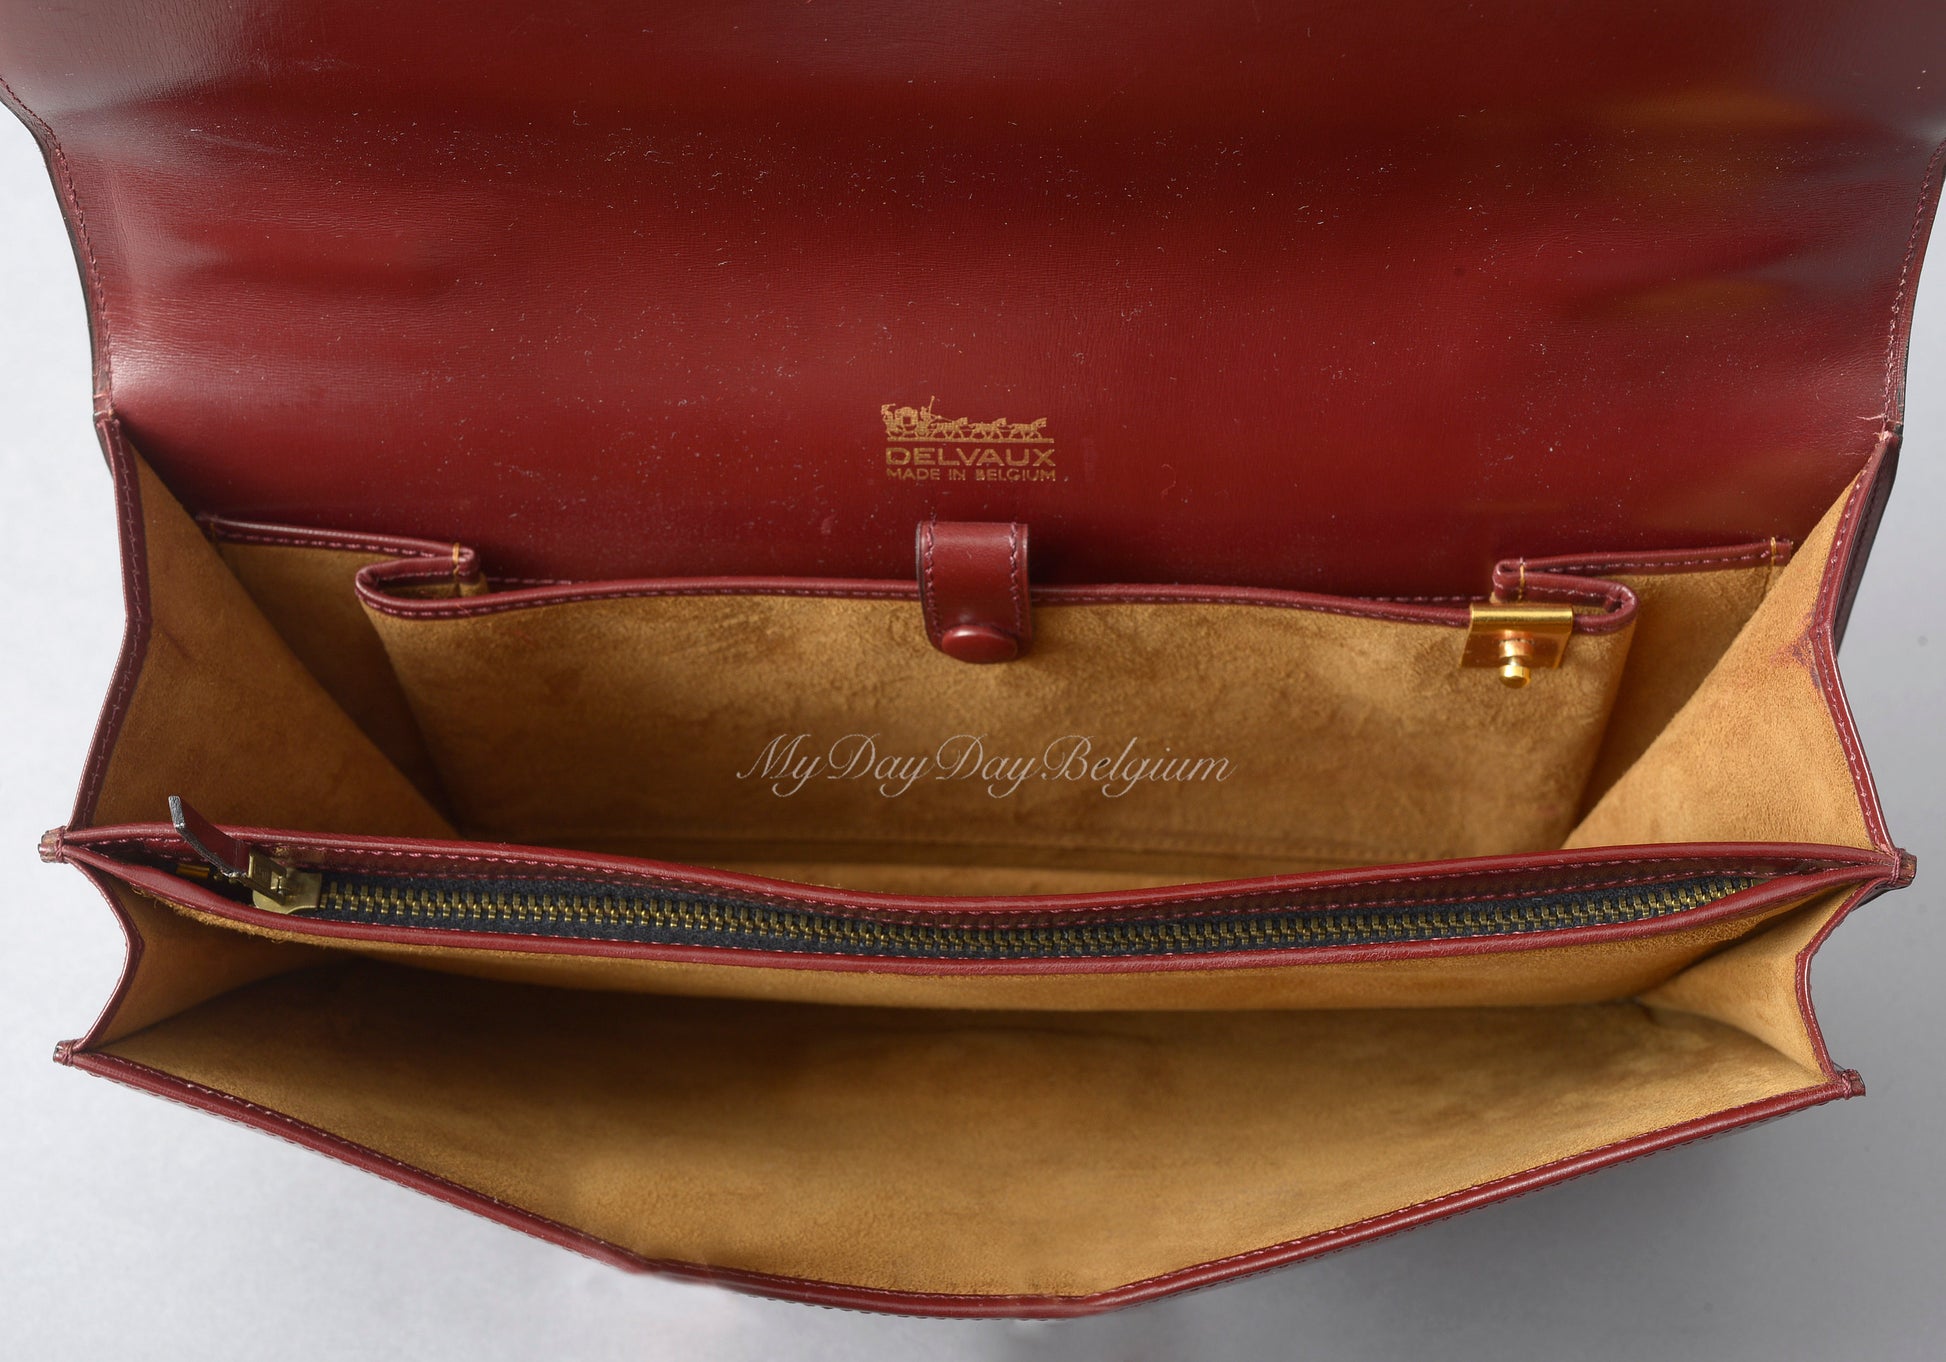 Delvaux Handbag 1998, Vintage Delvaux Handbags